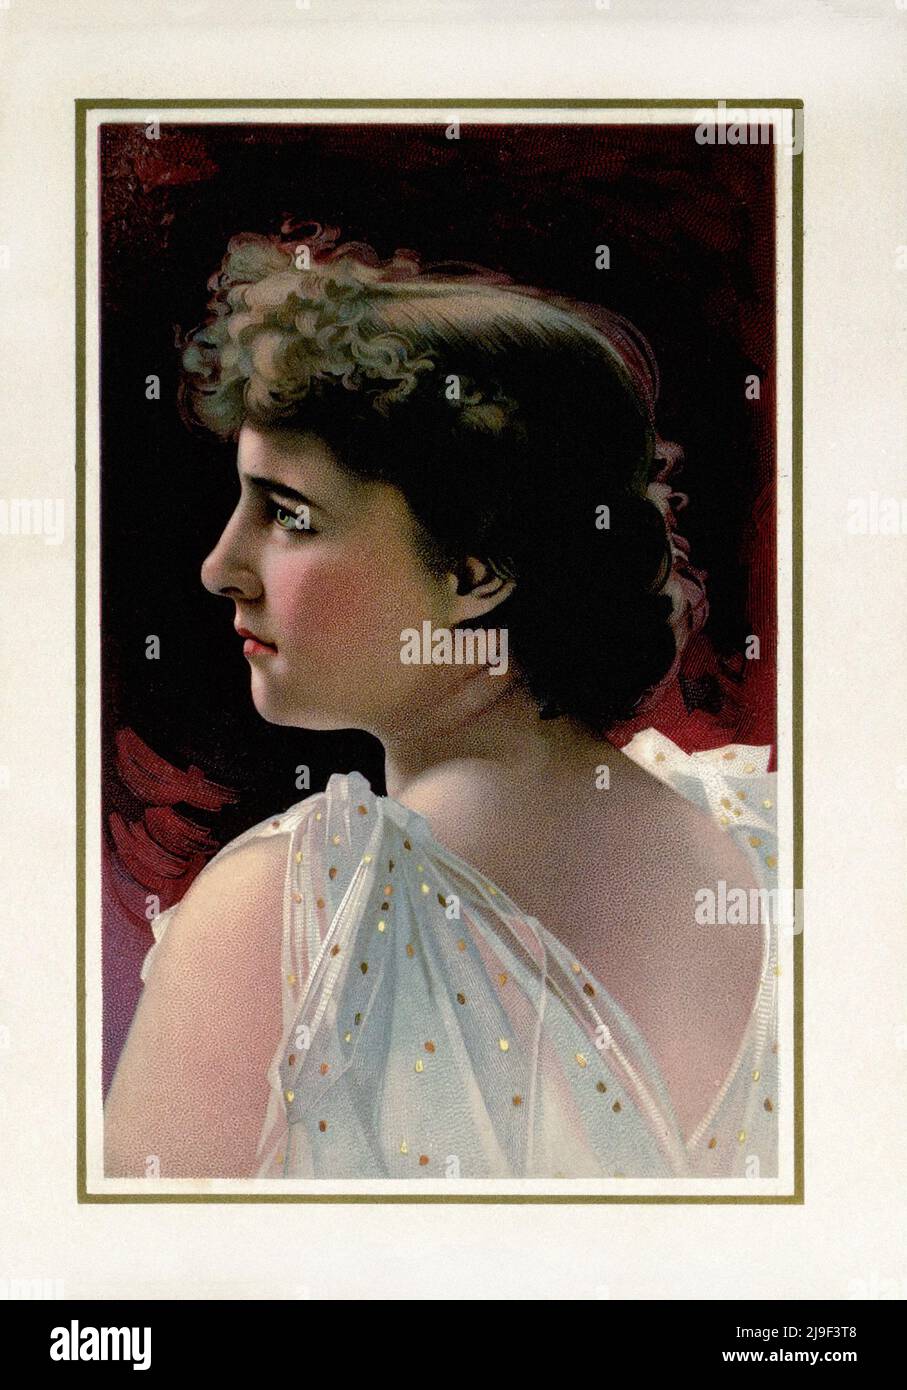 Litografia a colori di Emilie Charlotte Langtry. Emilie Charlotte Langtry (née le Breton; 1853 – 1929), conosciuta come Lillie (o Lily) Langtry e soprannominata Foto Stock